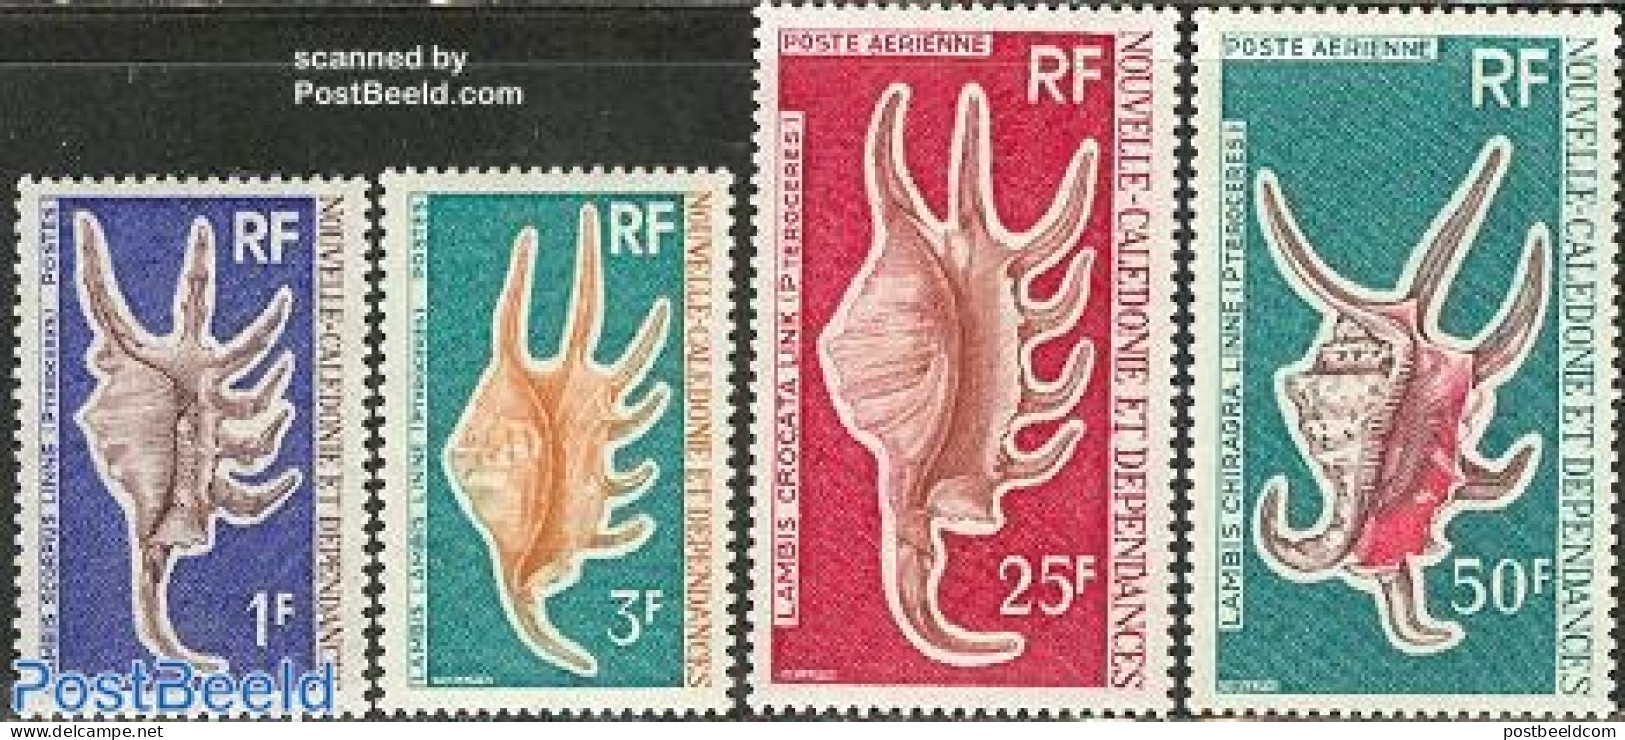 New Caledonia 1972 Shells 4v, Mint NH, Nature - Shells & Crustaceans - Nuevos